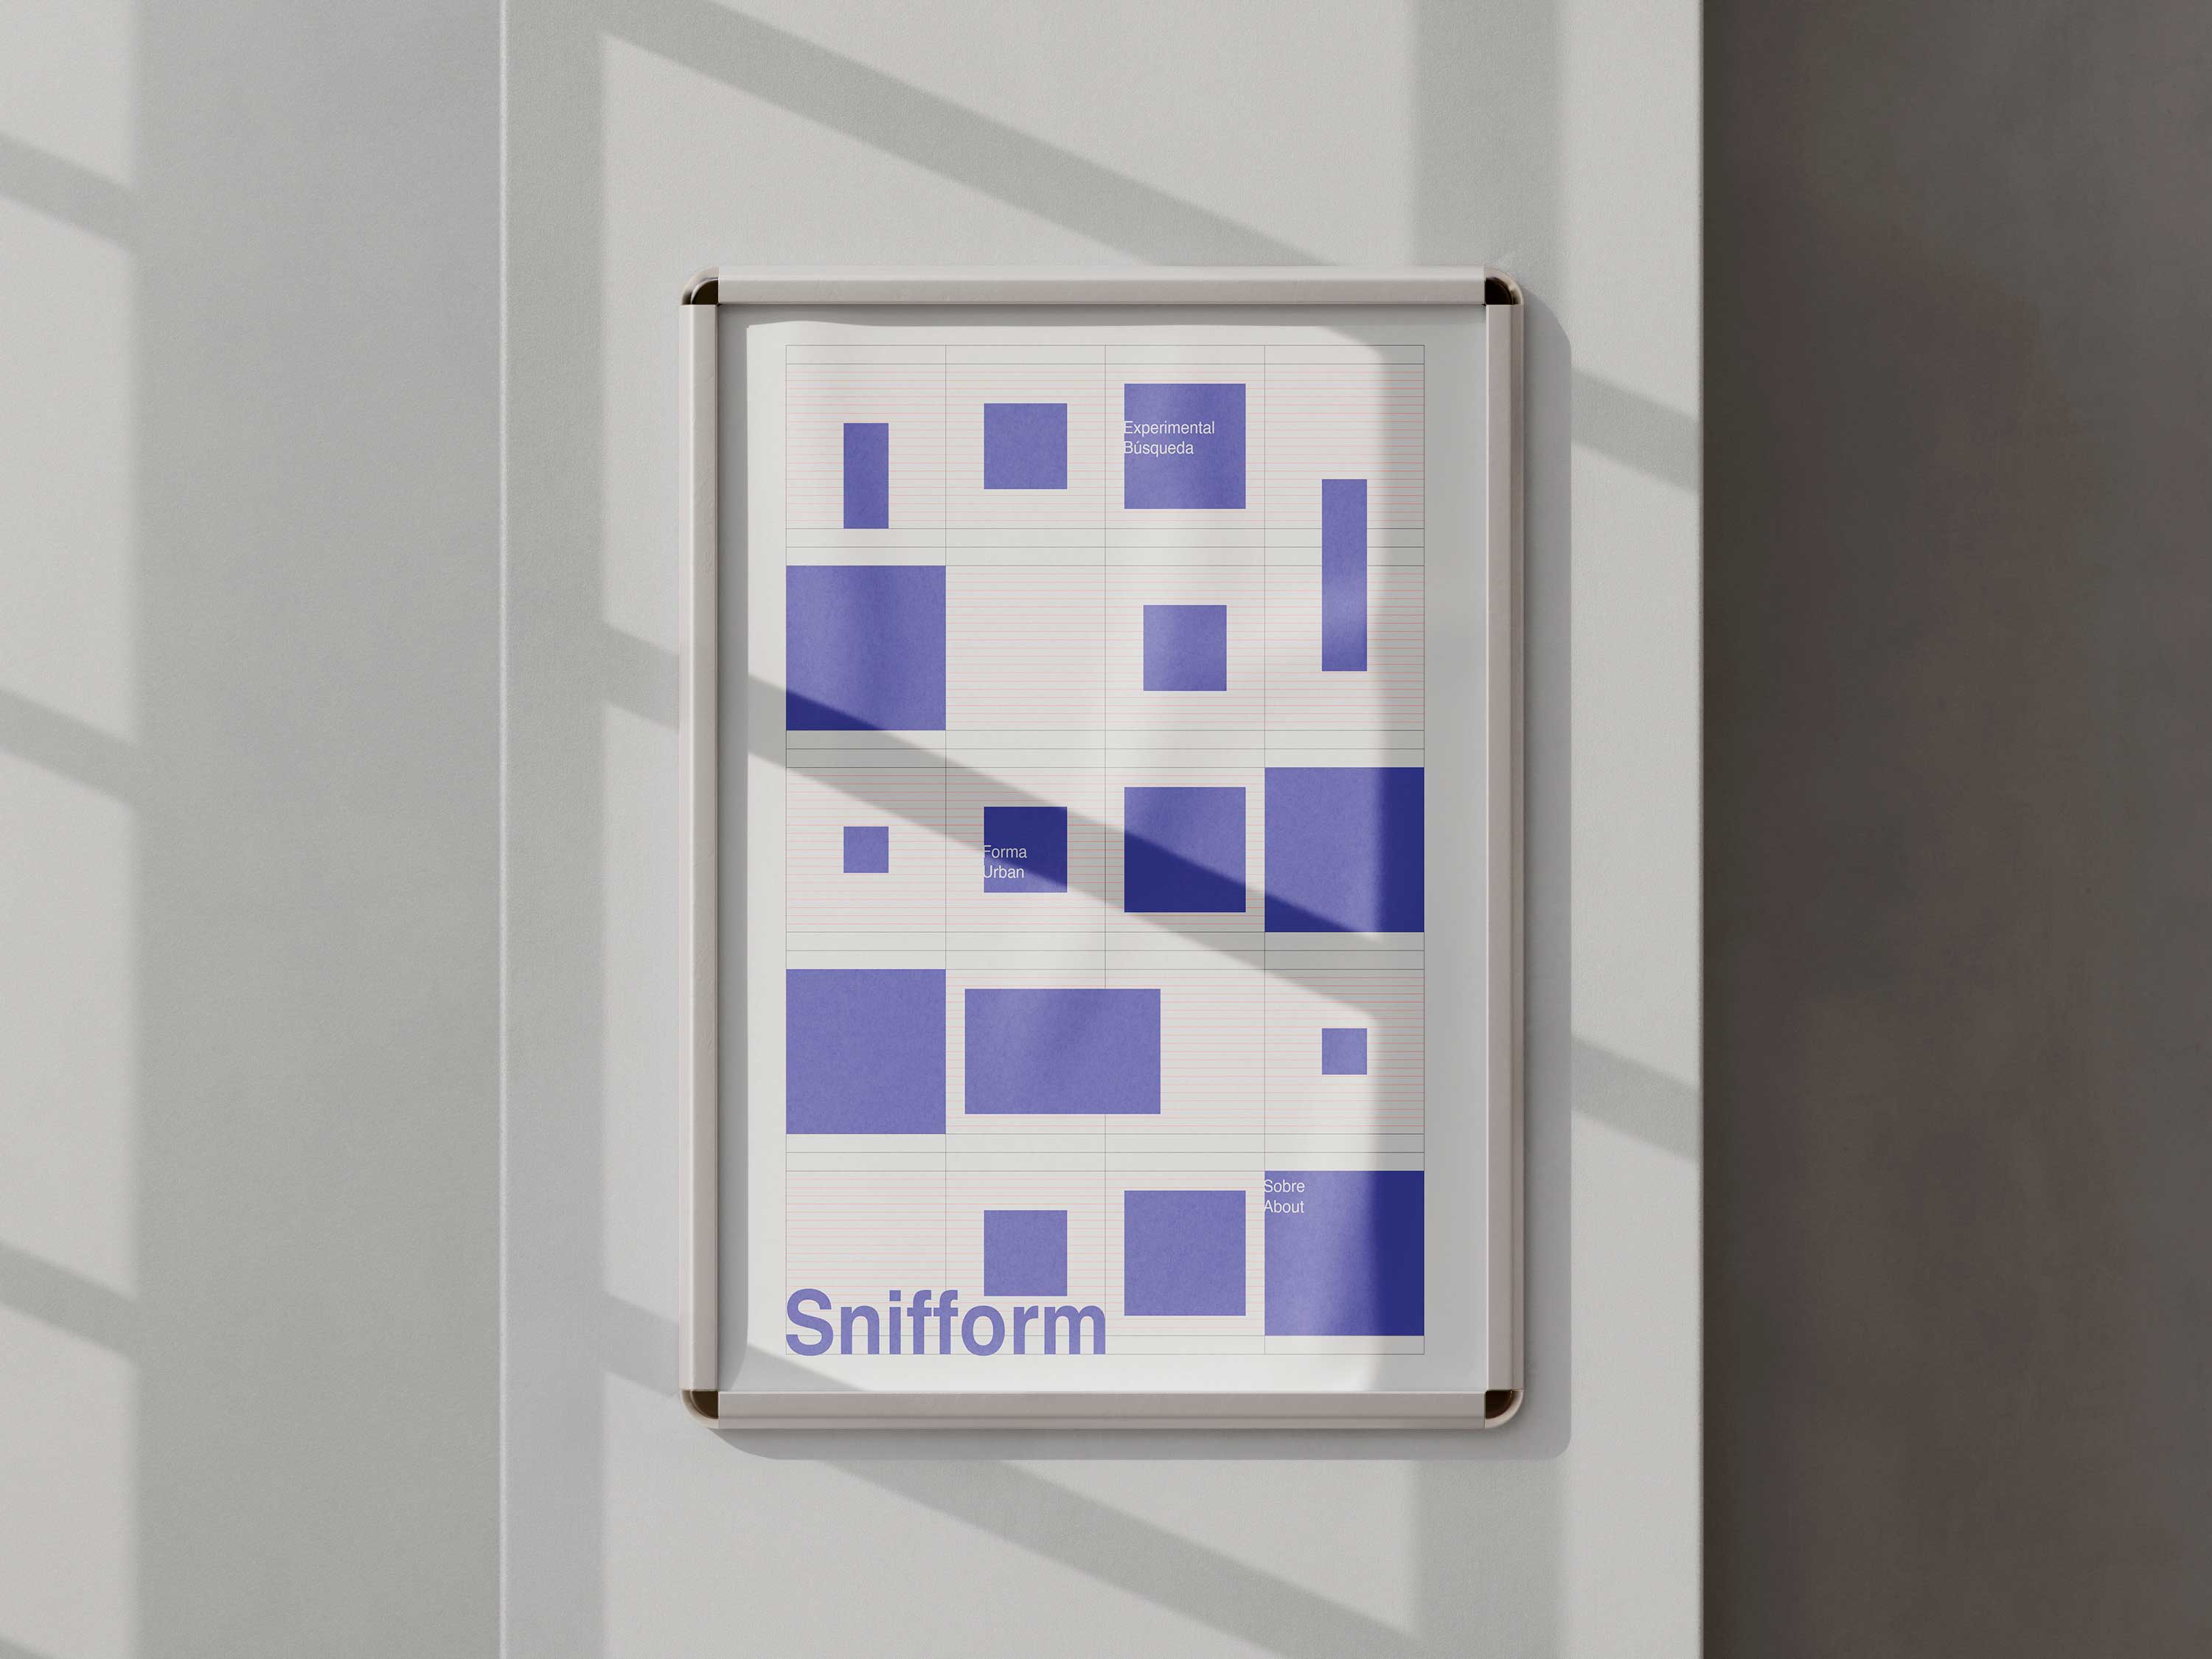 Poster creado con la retícula "Snifform grid" de Husmee